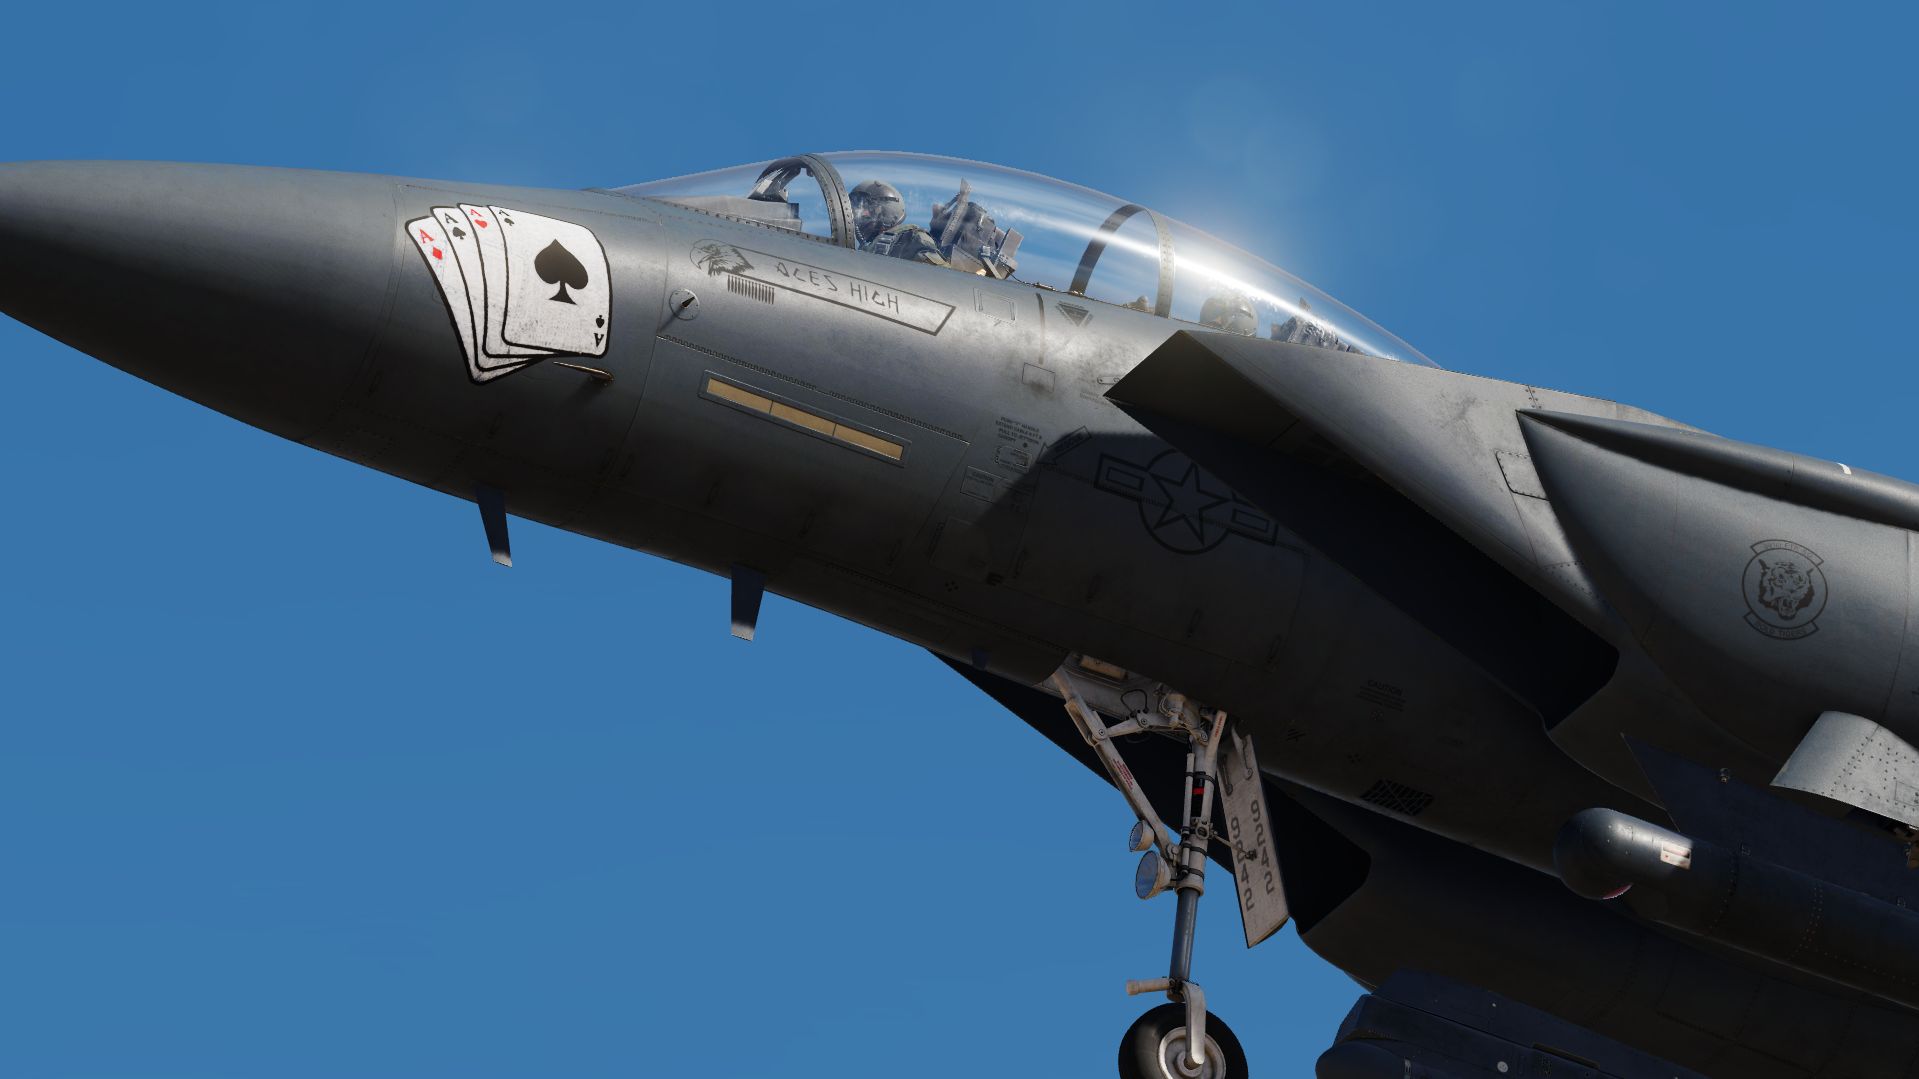 F-15E Strike eagle MO 90-242 "Aces high" (UPDATED)